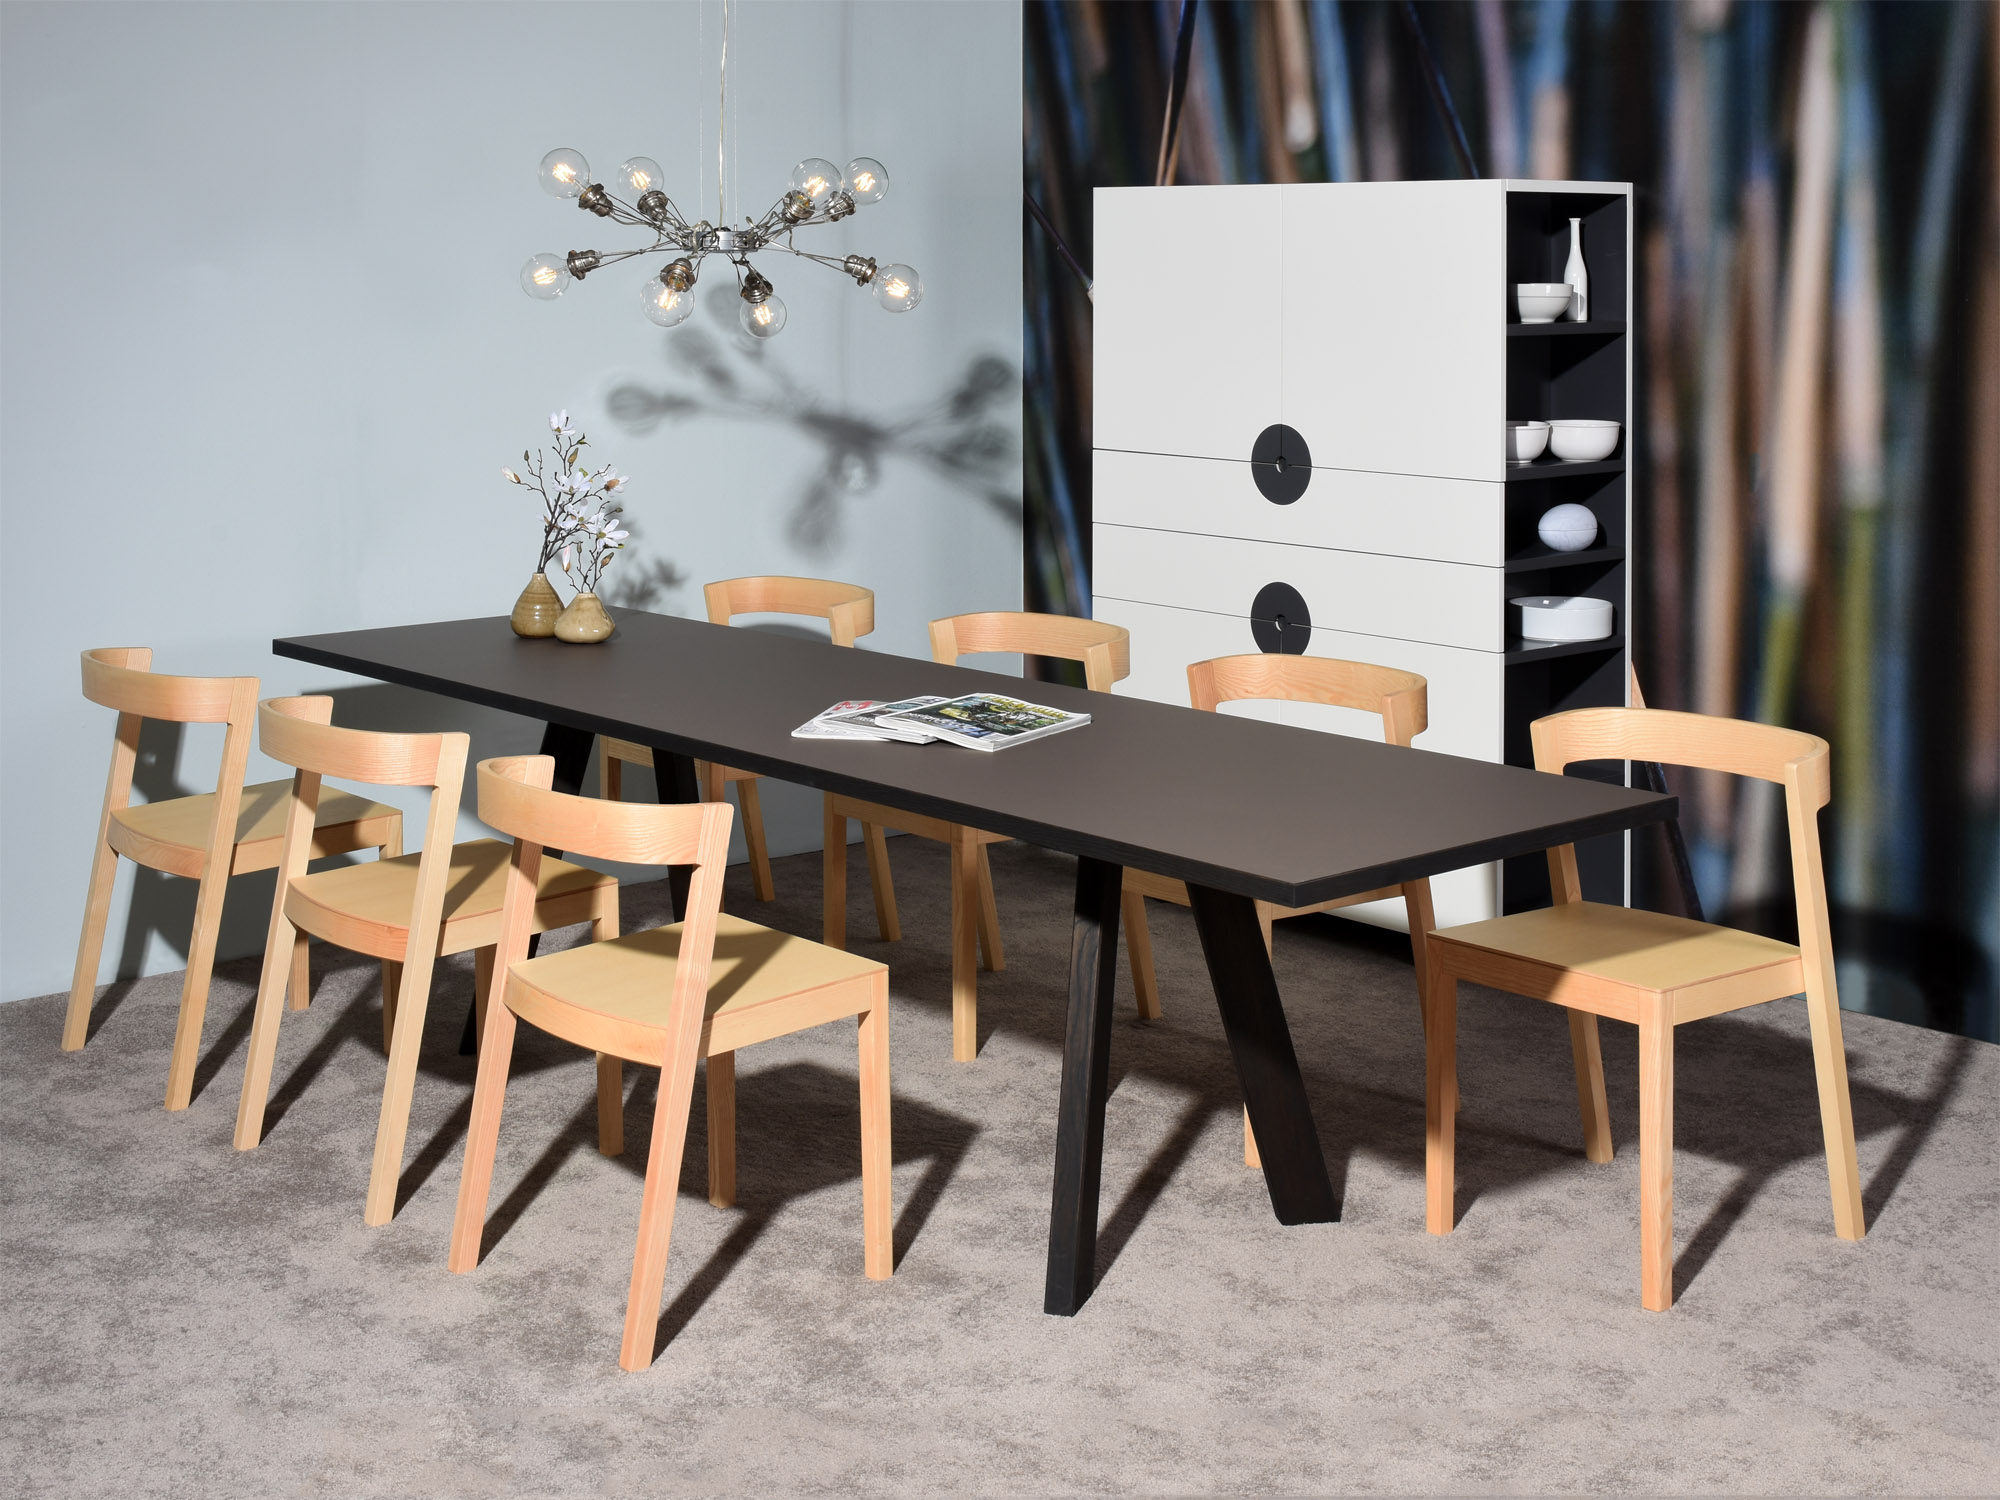 Castelijn DISK kast & TXS tafel, design: Dick Spierenburg & Coen Castelijn